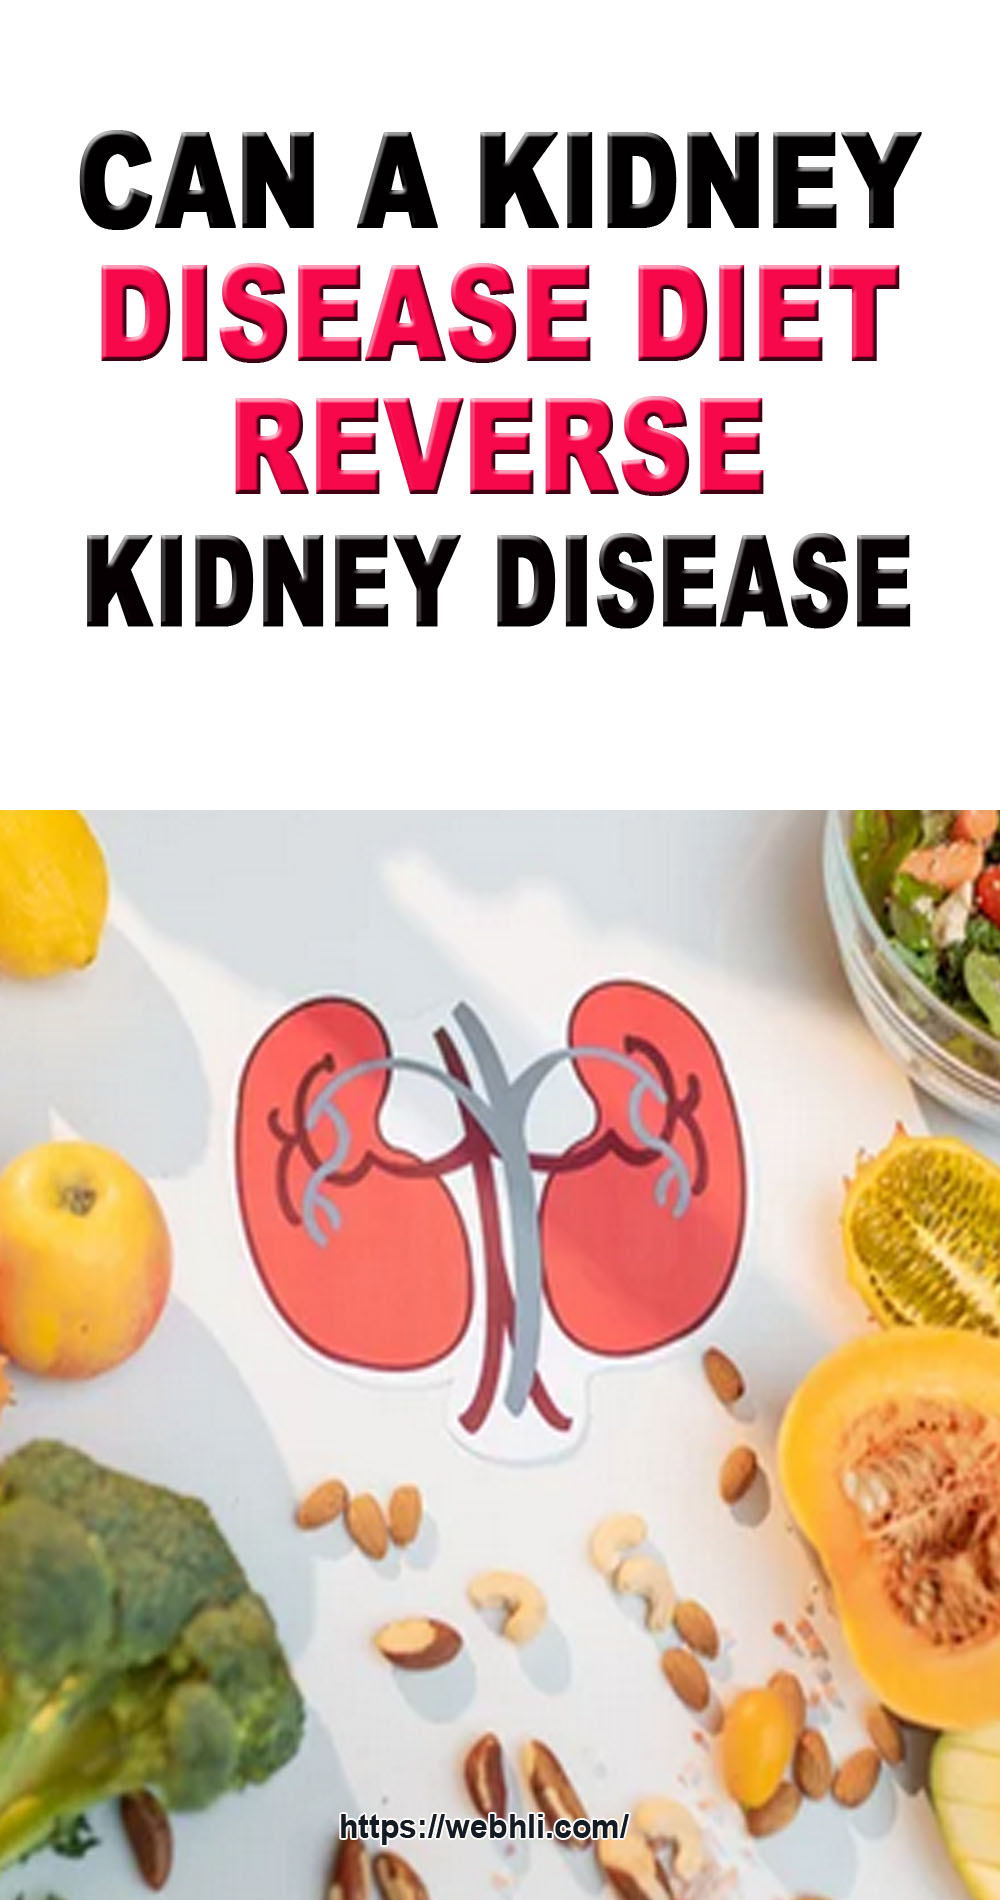 Can a Kidney Disease Diet Reverse Kidney Disease? | Healthy Lifestyle